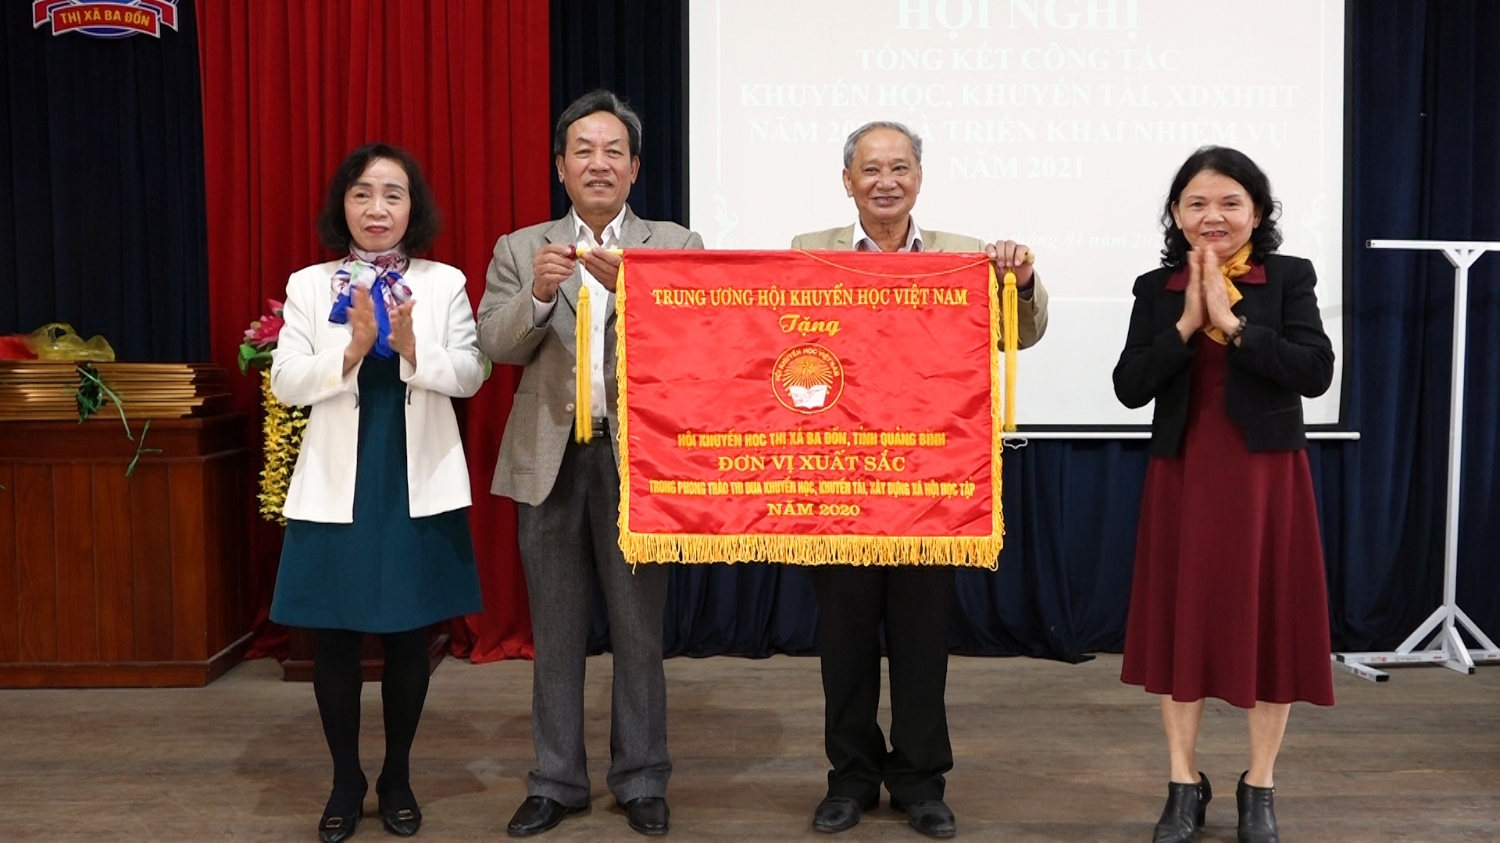 Bà Phạm Thị Bích Lựa- Chủ tịch Hội khuyến học tỉnh trao cờ thi đua của Trung ương hội khuyến học Việt Nam cho Hội khuyến học thị xã Ba Đồn.